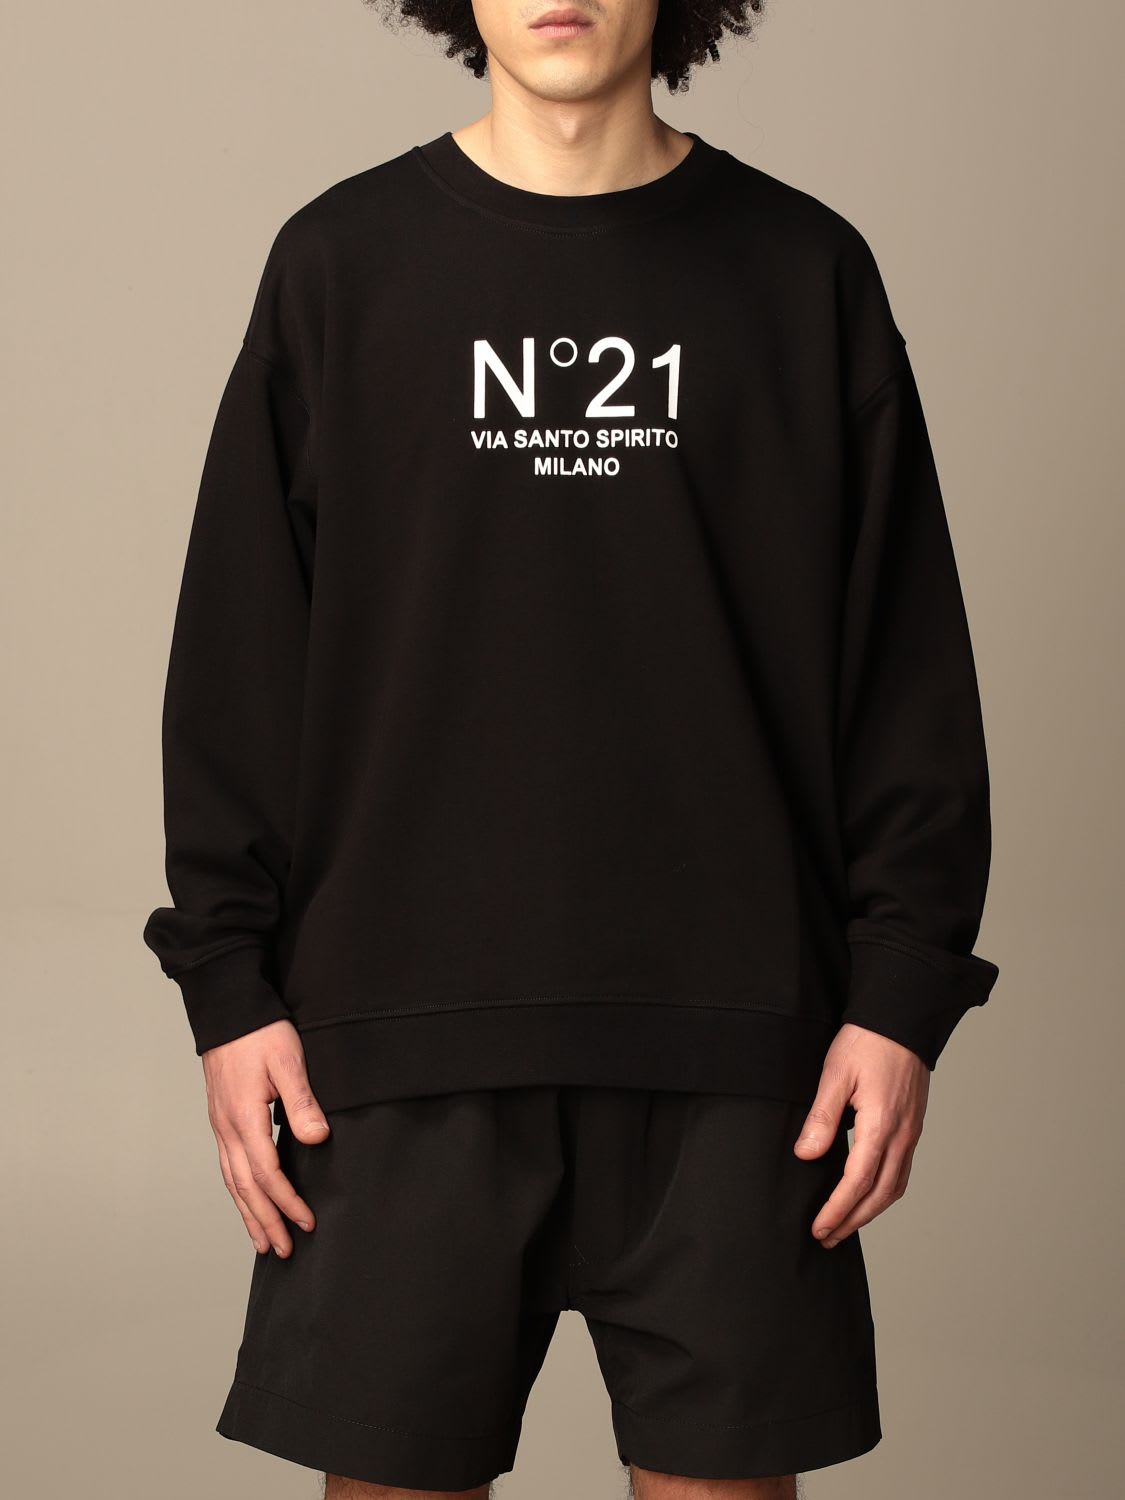 N.21 N° 21 Sweatshirt N ° 21 Crewneck Sweatshirt With Logo